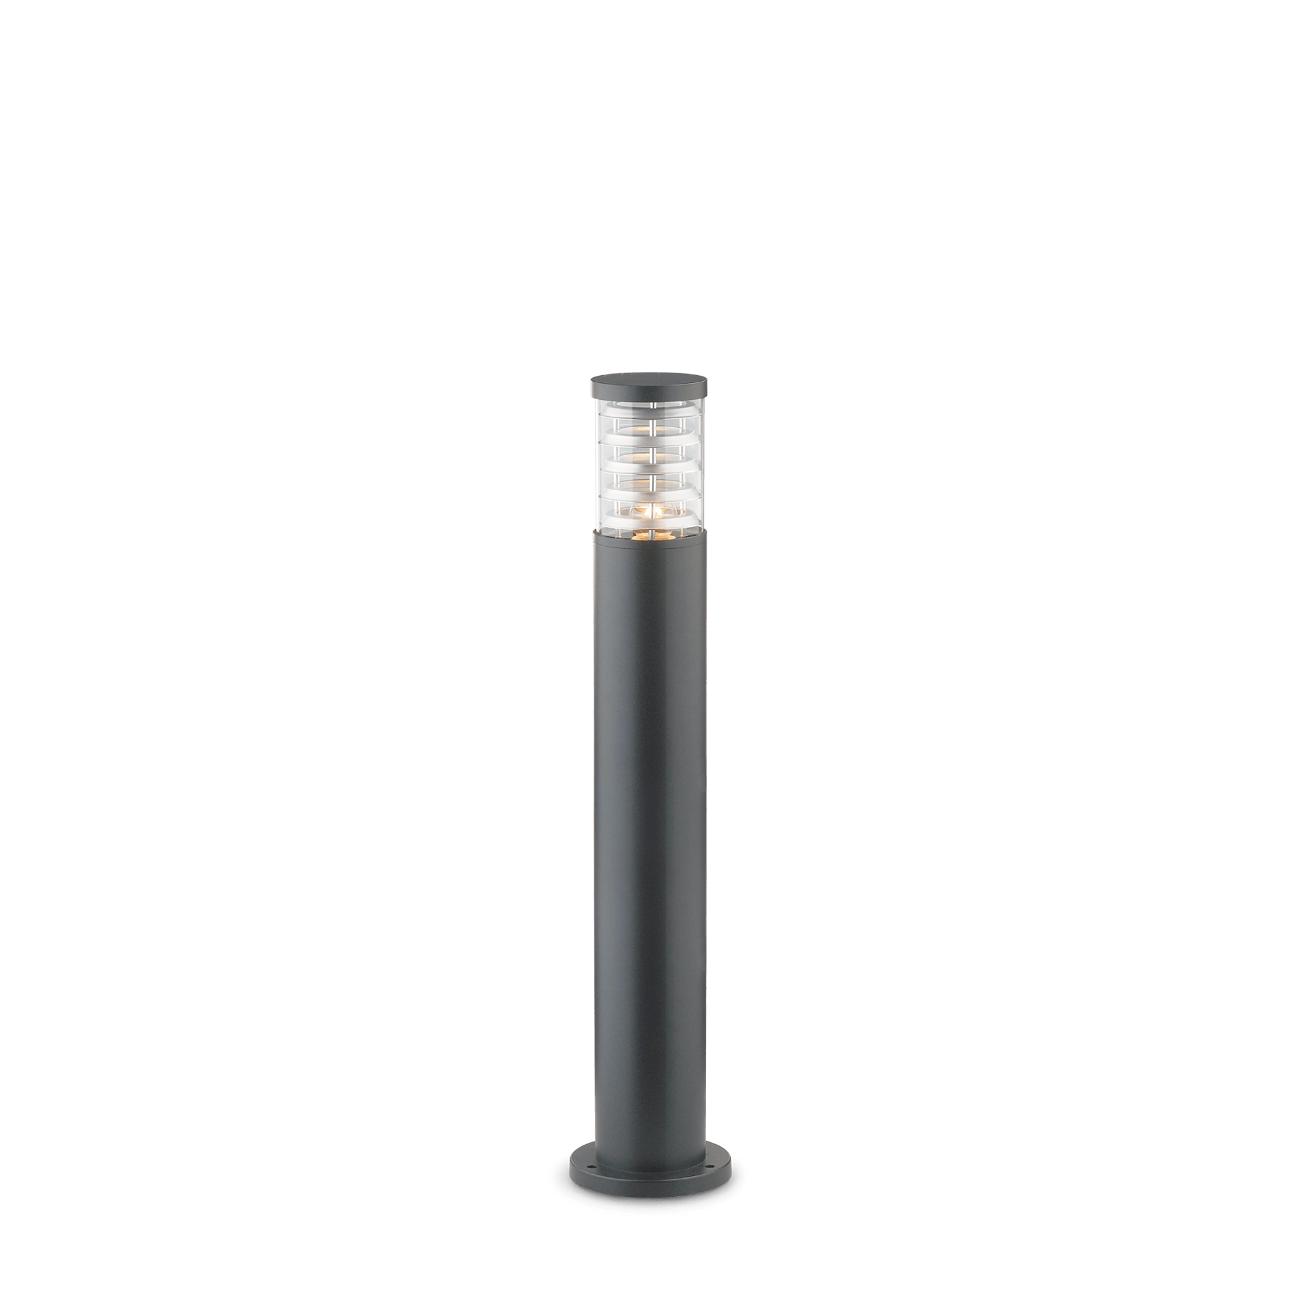 Ideal Lux Venkovní sloupkové svítidlo Tronco PT1 Big antracite 026992 antracitové 80,5cm IP44